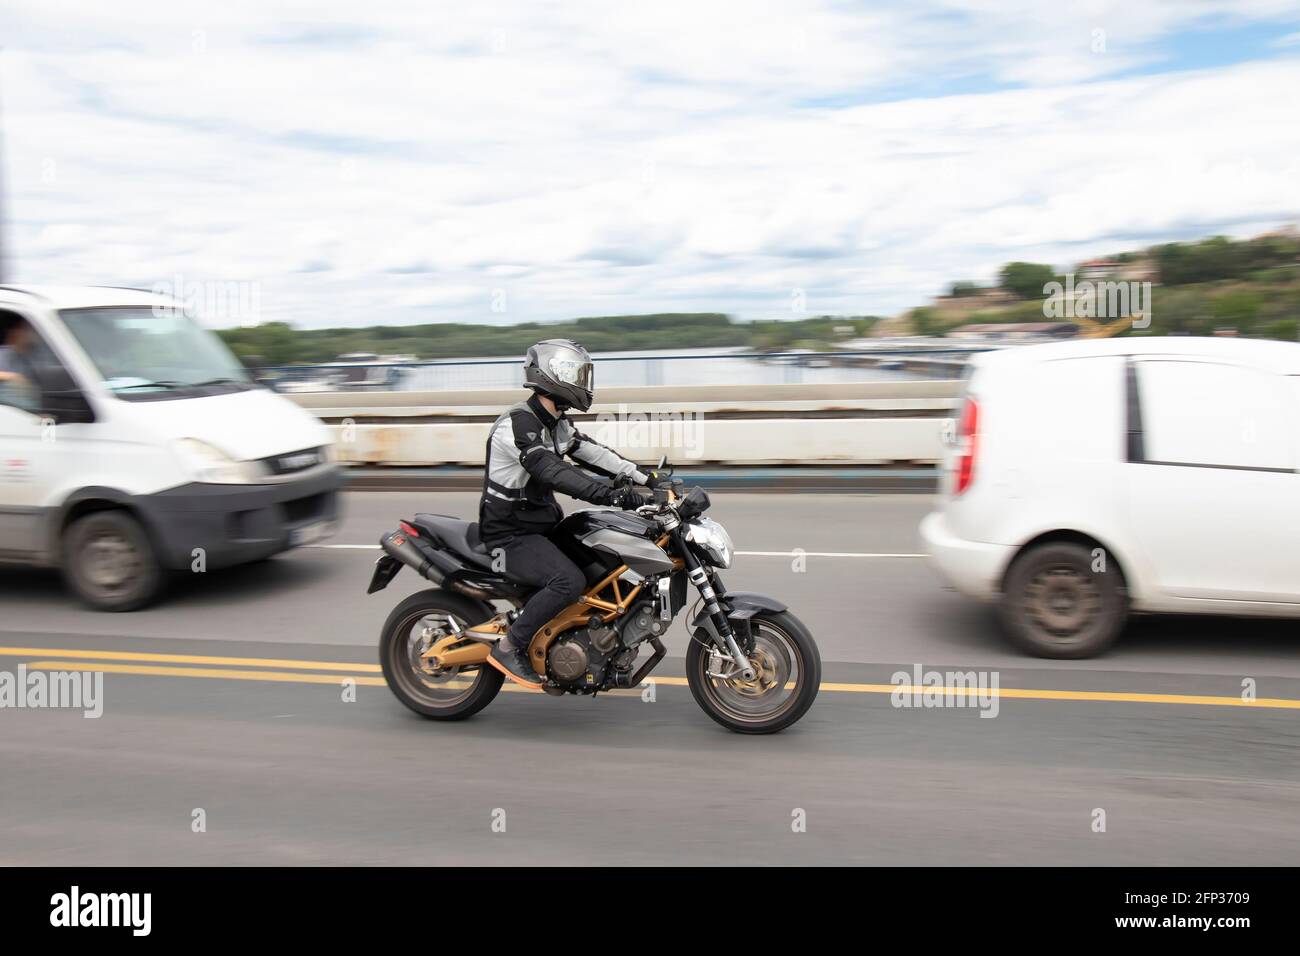 Belgrado, Serbia - 14 maggio 2021: Un uomo che guida una moto nel traffico, sul ponte della città Foto Stock